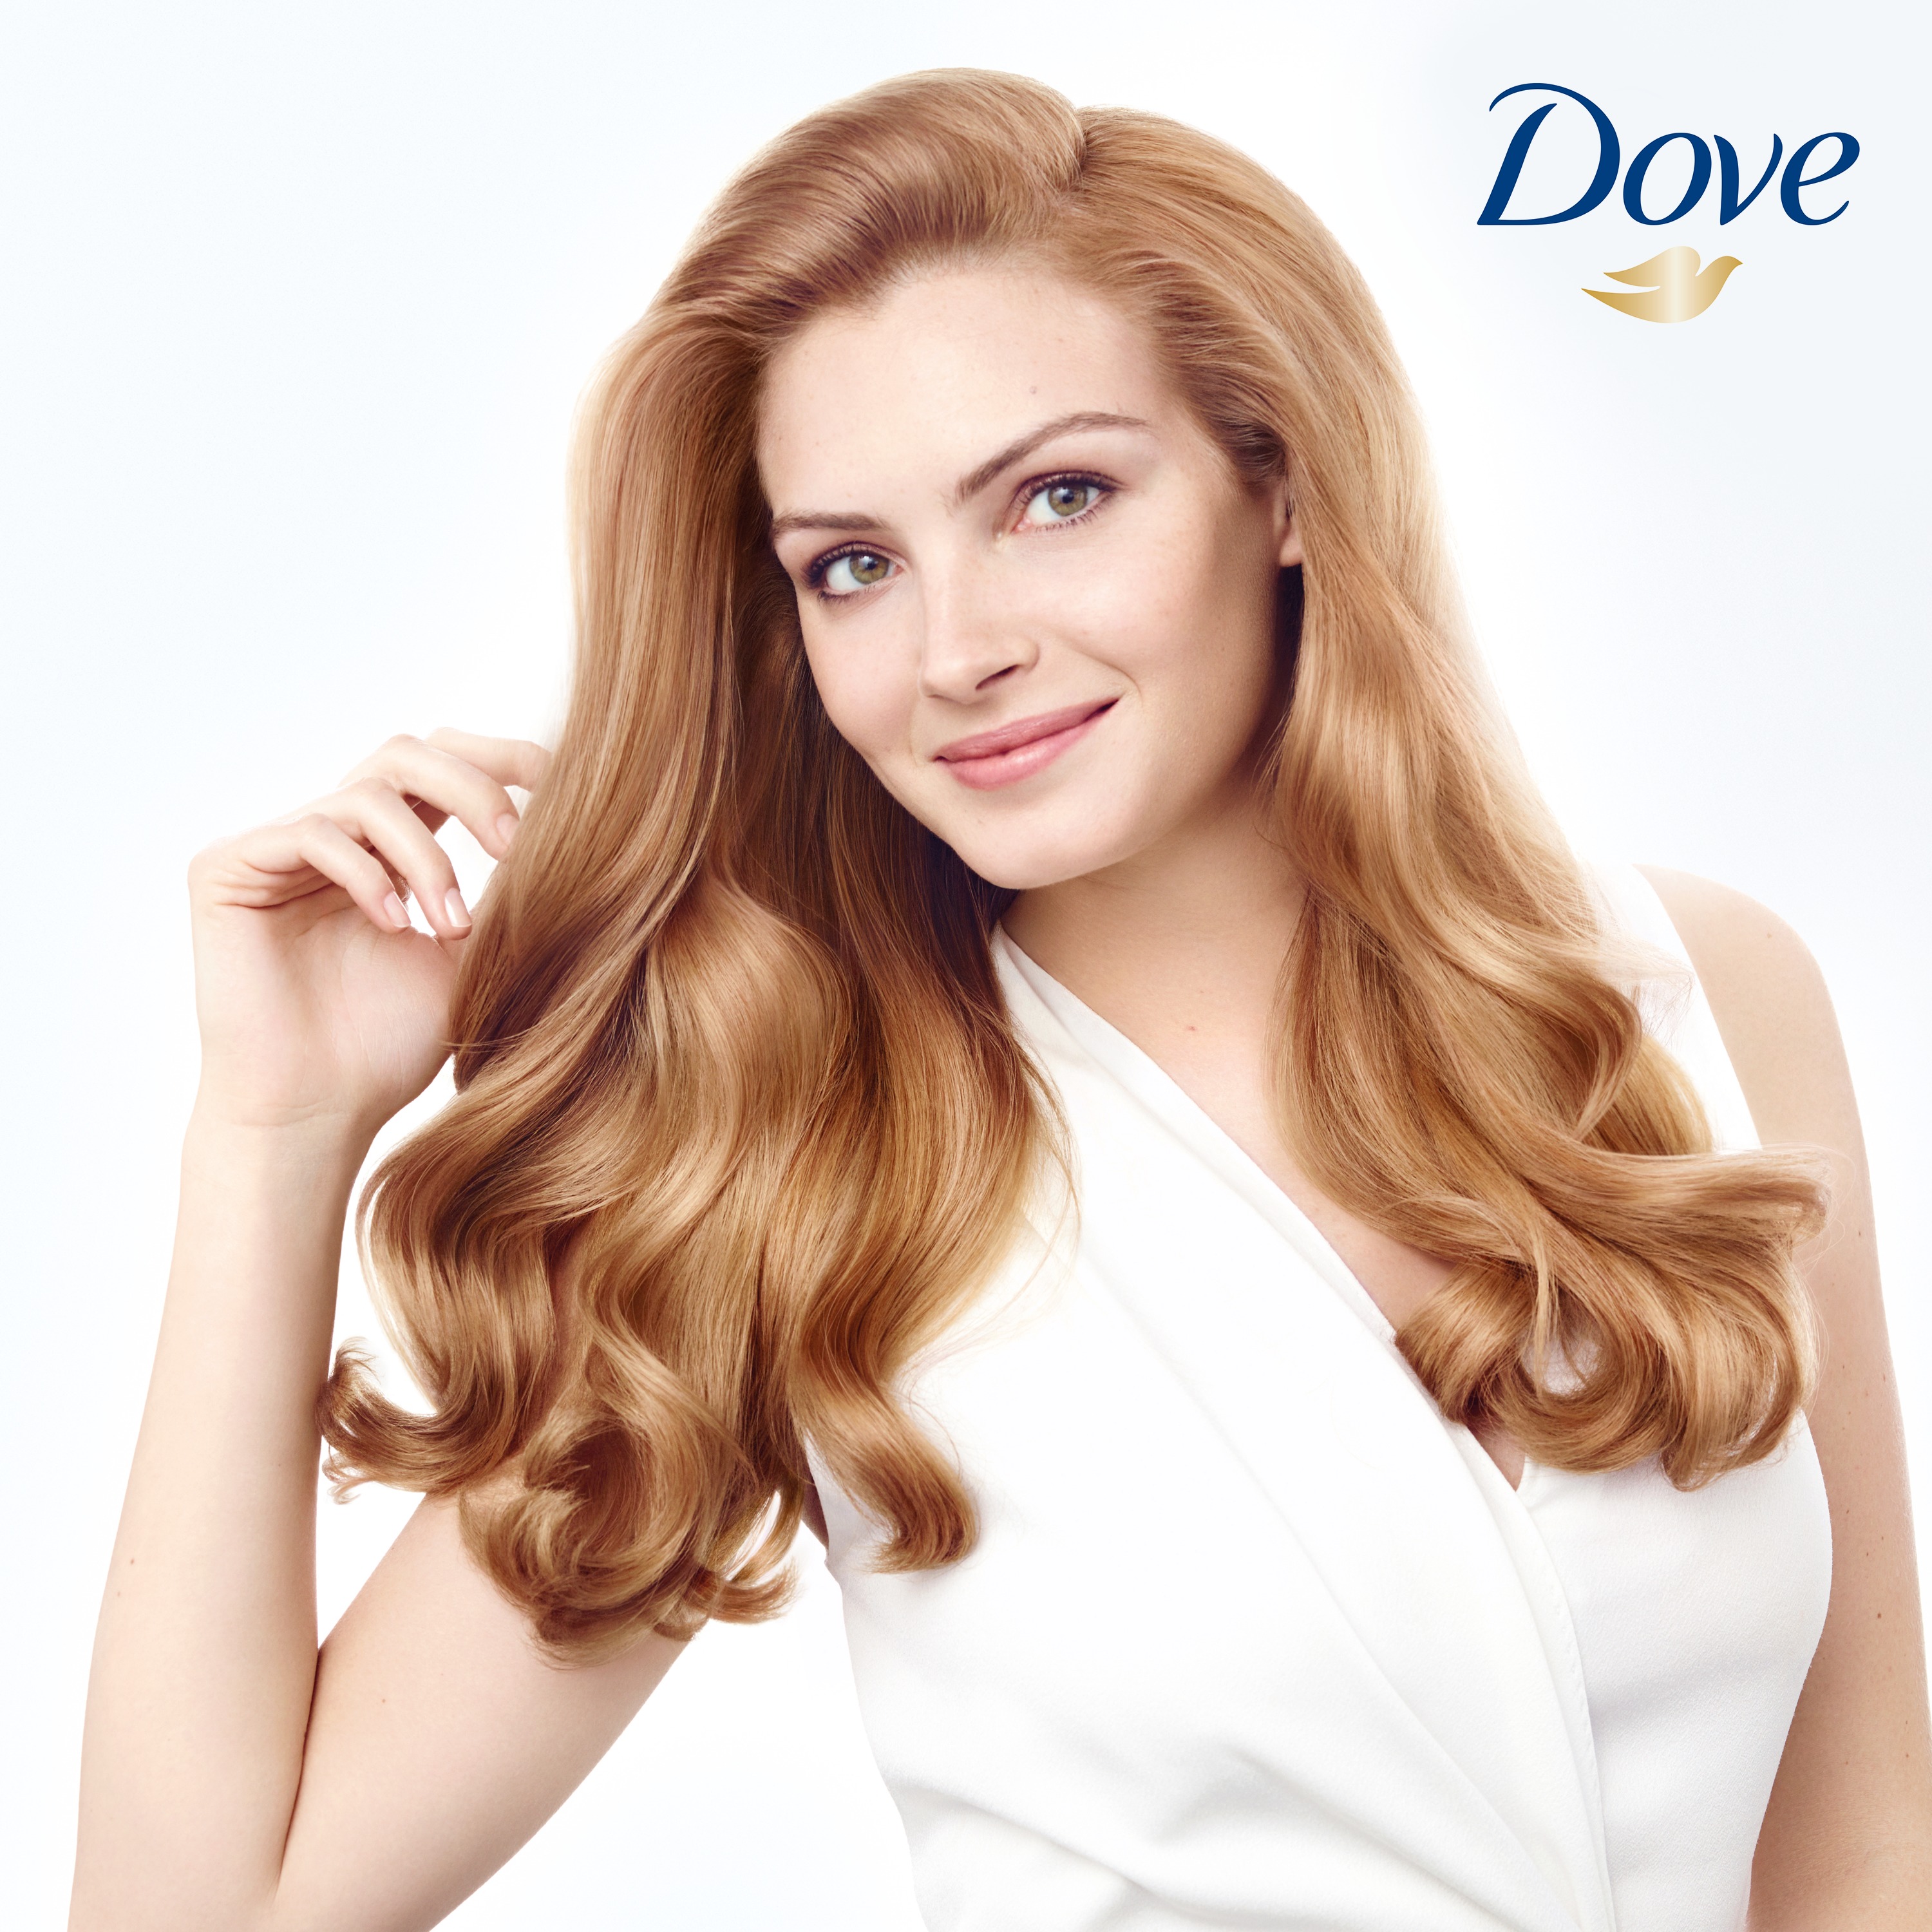 Dove Style + Care Volumizing Nourishing Spray Hair Styling Mousse, 7 oz - image 3 of 6